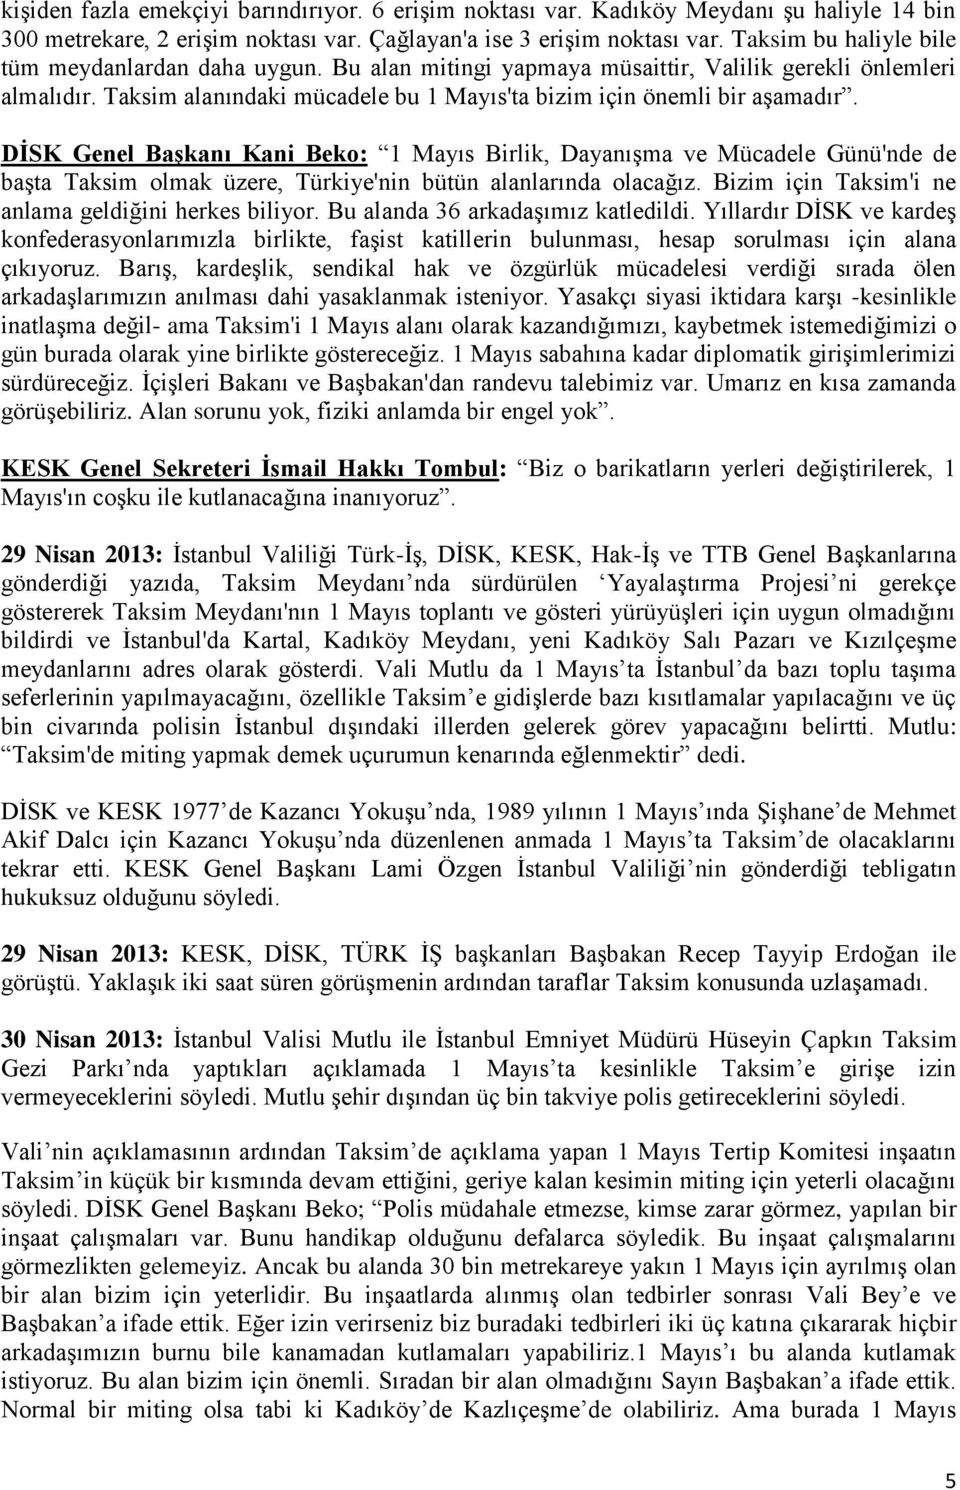 DİSK Genel Başkanı Kani Beko: 1 Mayıs Birlik, Dayanışma ve Mücadele Günü'nde de başta Taksim olmak üzere, Türkiye'nin bütün alanlarında olacağız.